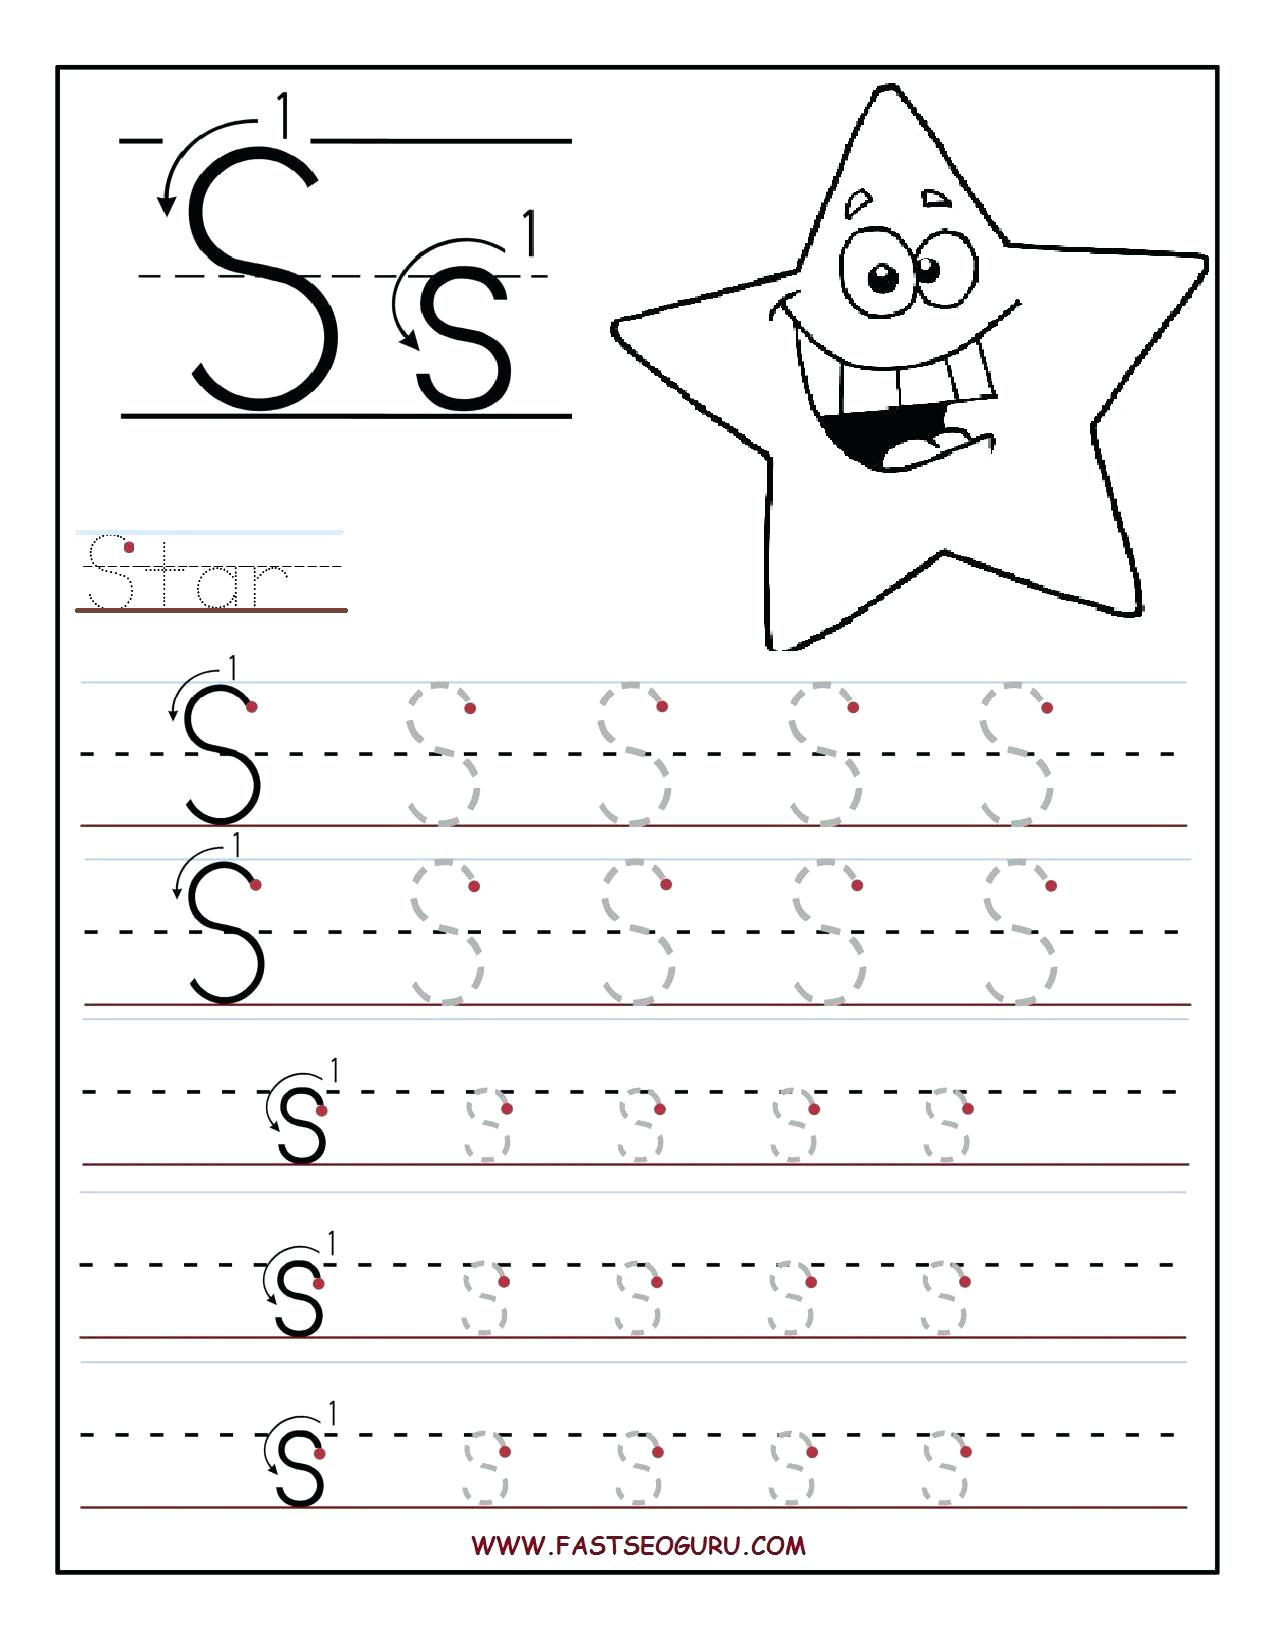 Preschool Name Worksheet Generator - Clover Hatunisi with regard to Alphabet Tracing Generator